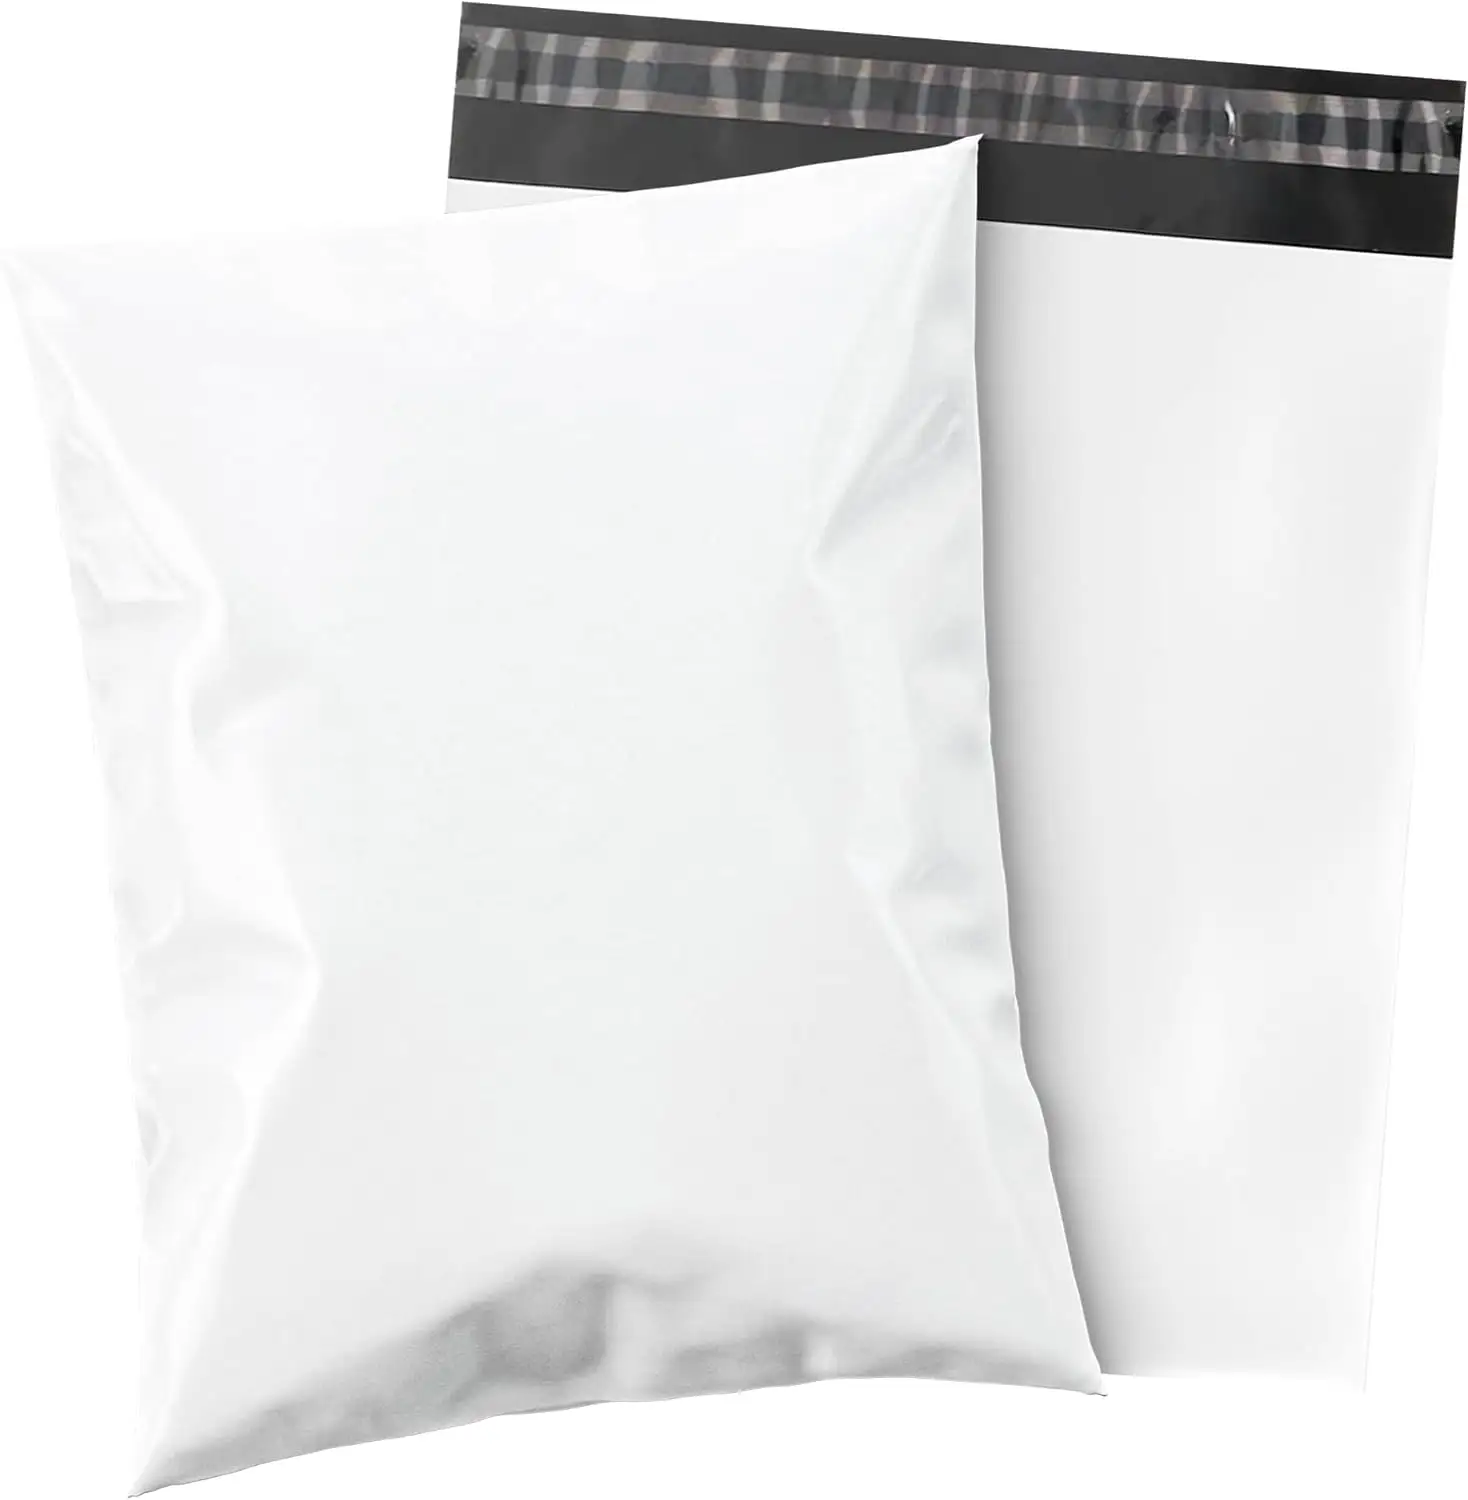 CTCX Sacos de plástico para envio, sacola para envio de roupas, envelope de livraison, sacola poli para envio